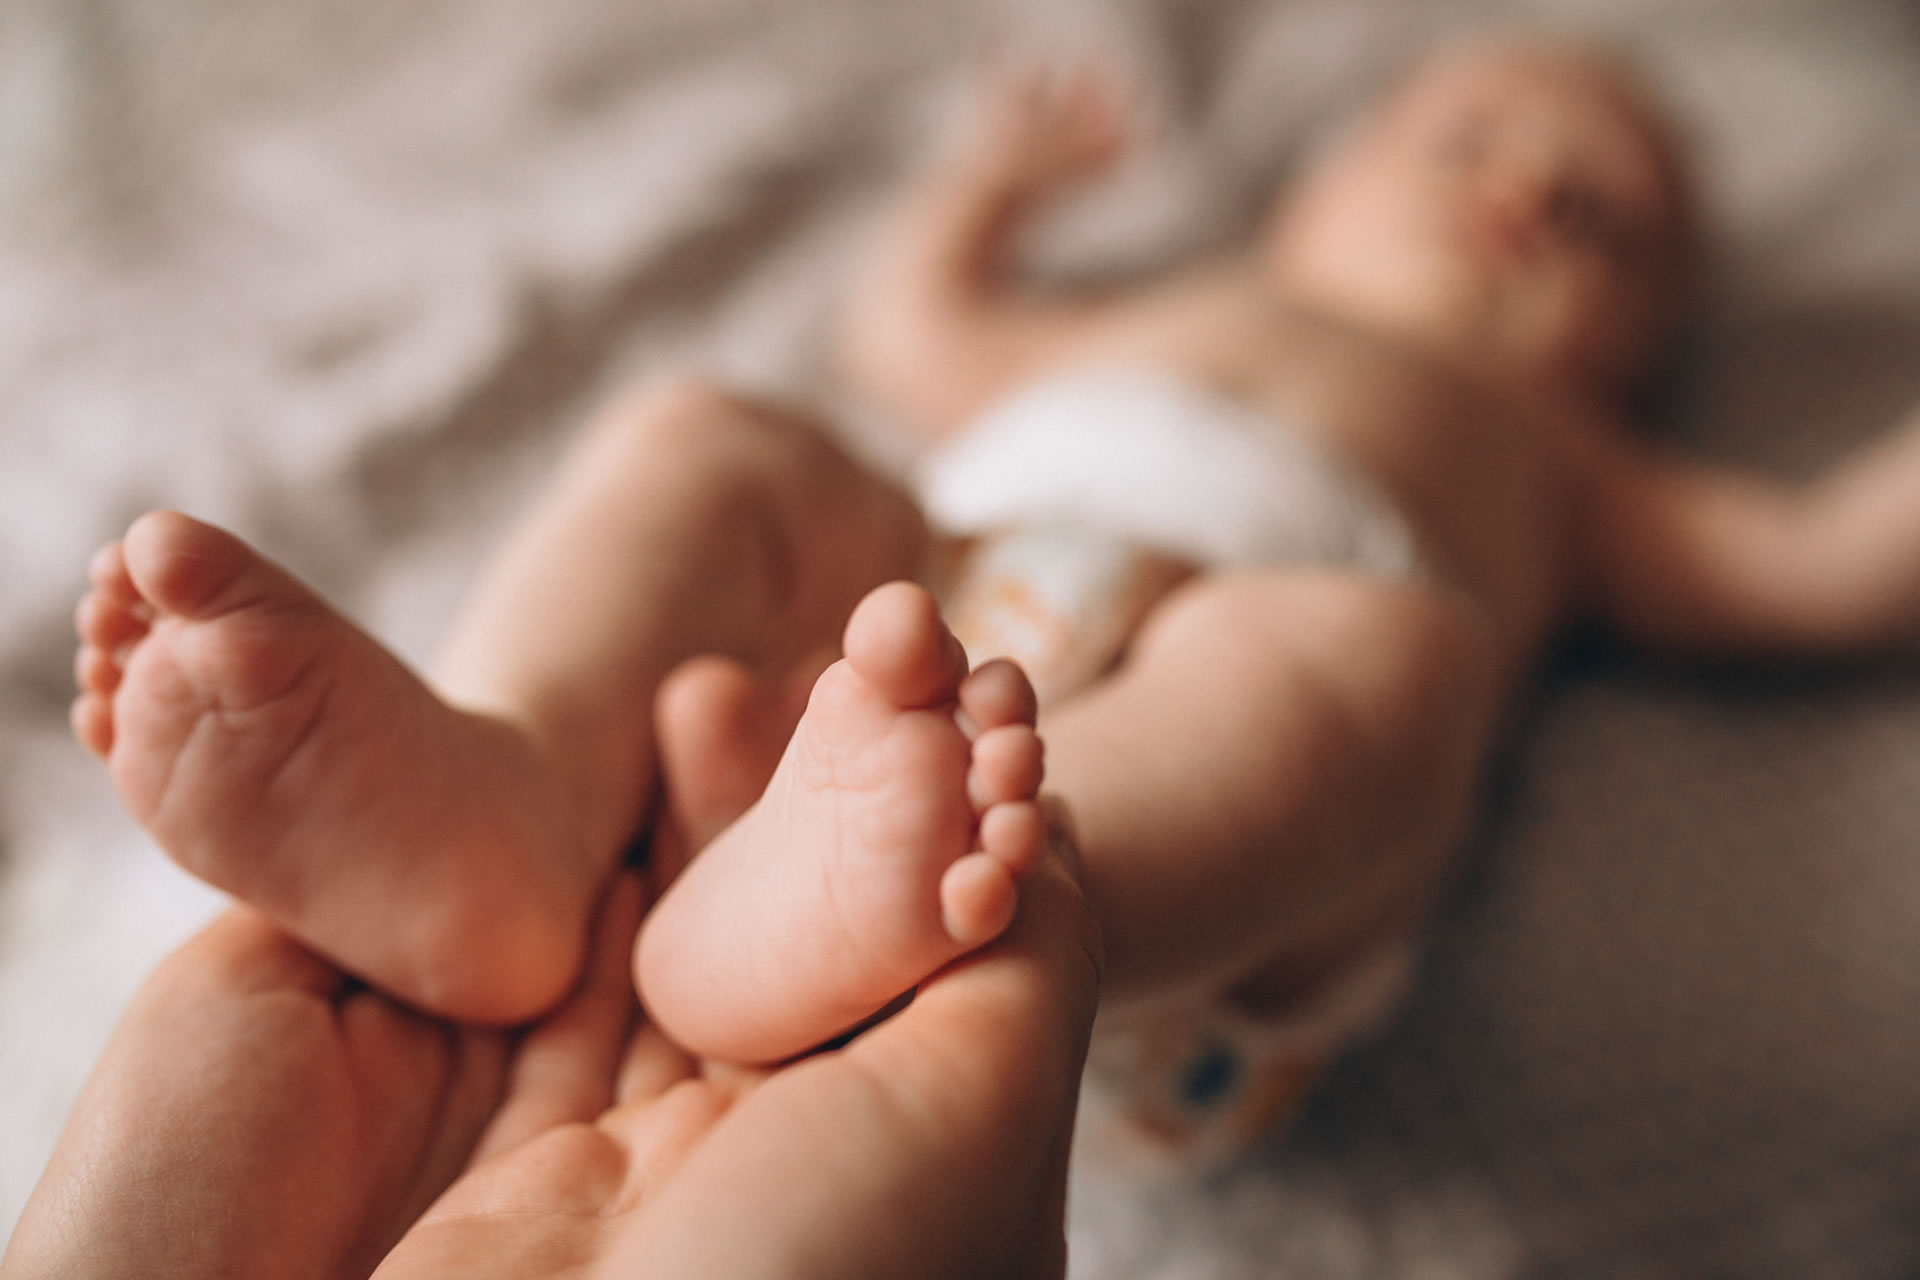 Coleta de biometria em bebês pode evitar fraudes e troca na maternidade